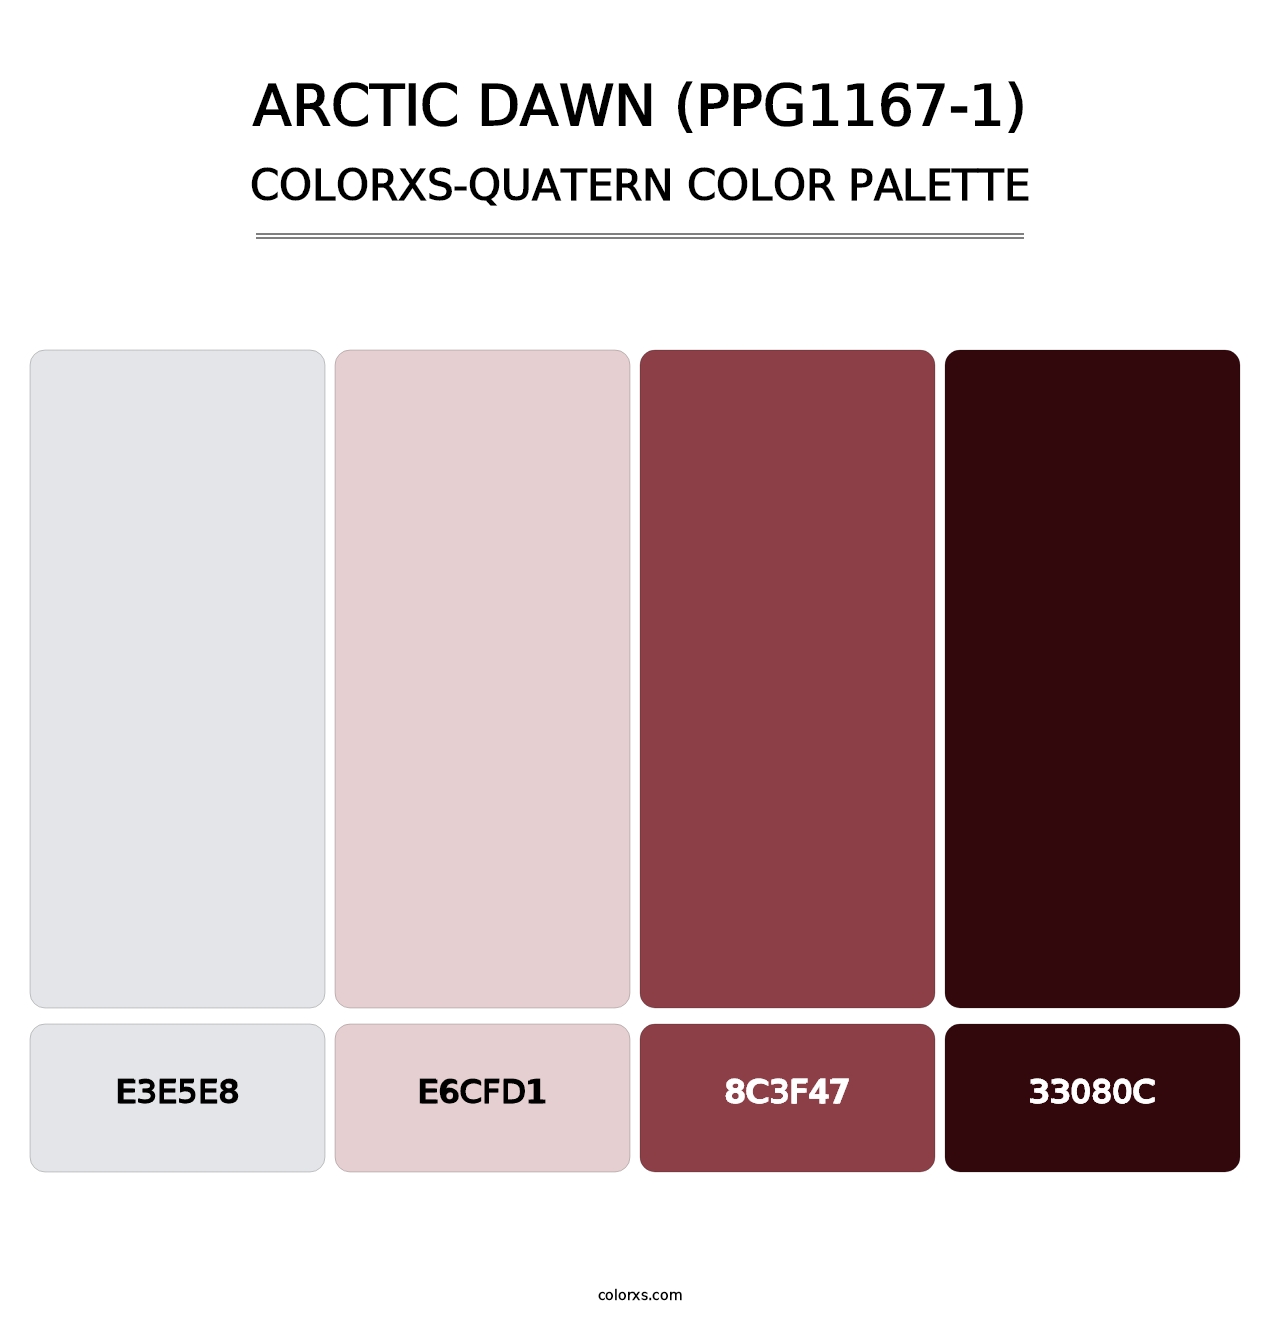 Arctic Dawn (PPG1167-1) - Colorxs Quatern Palette